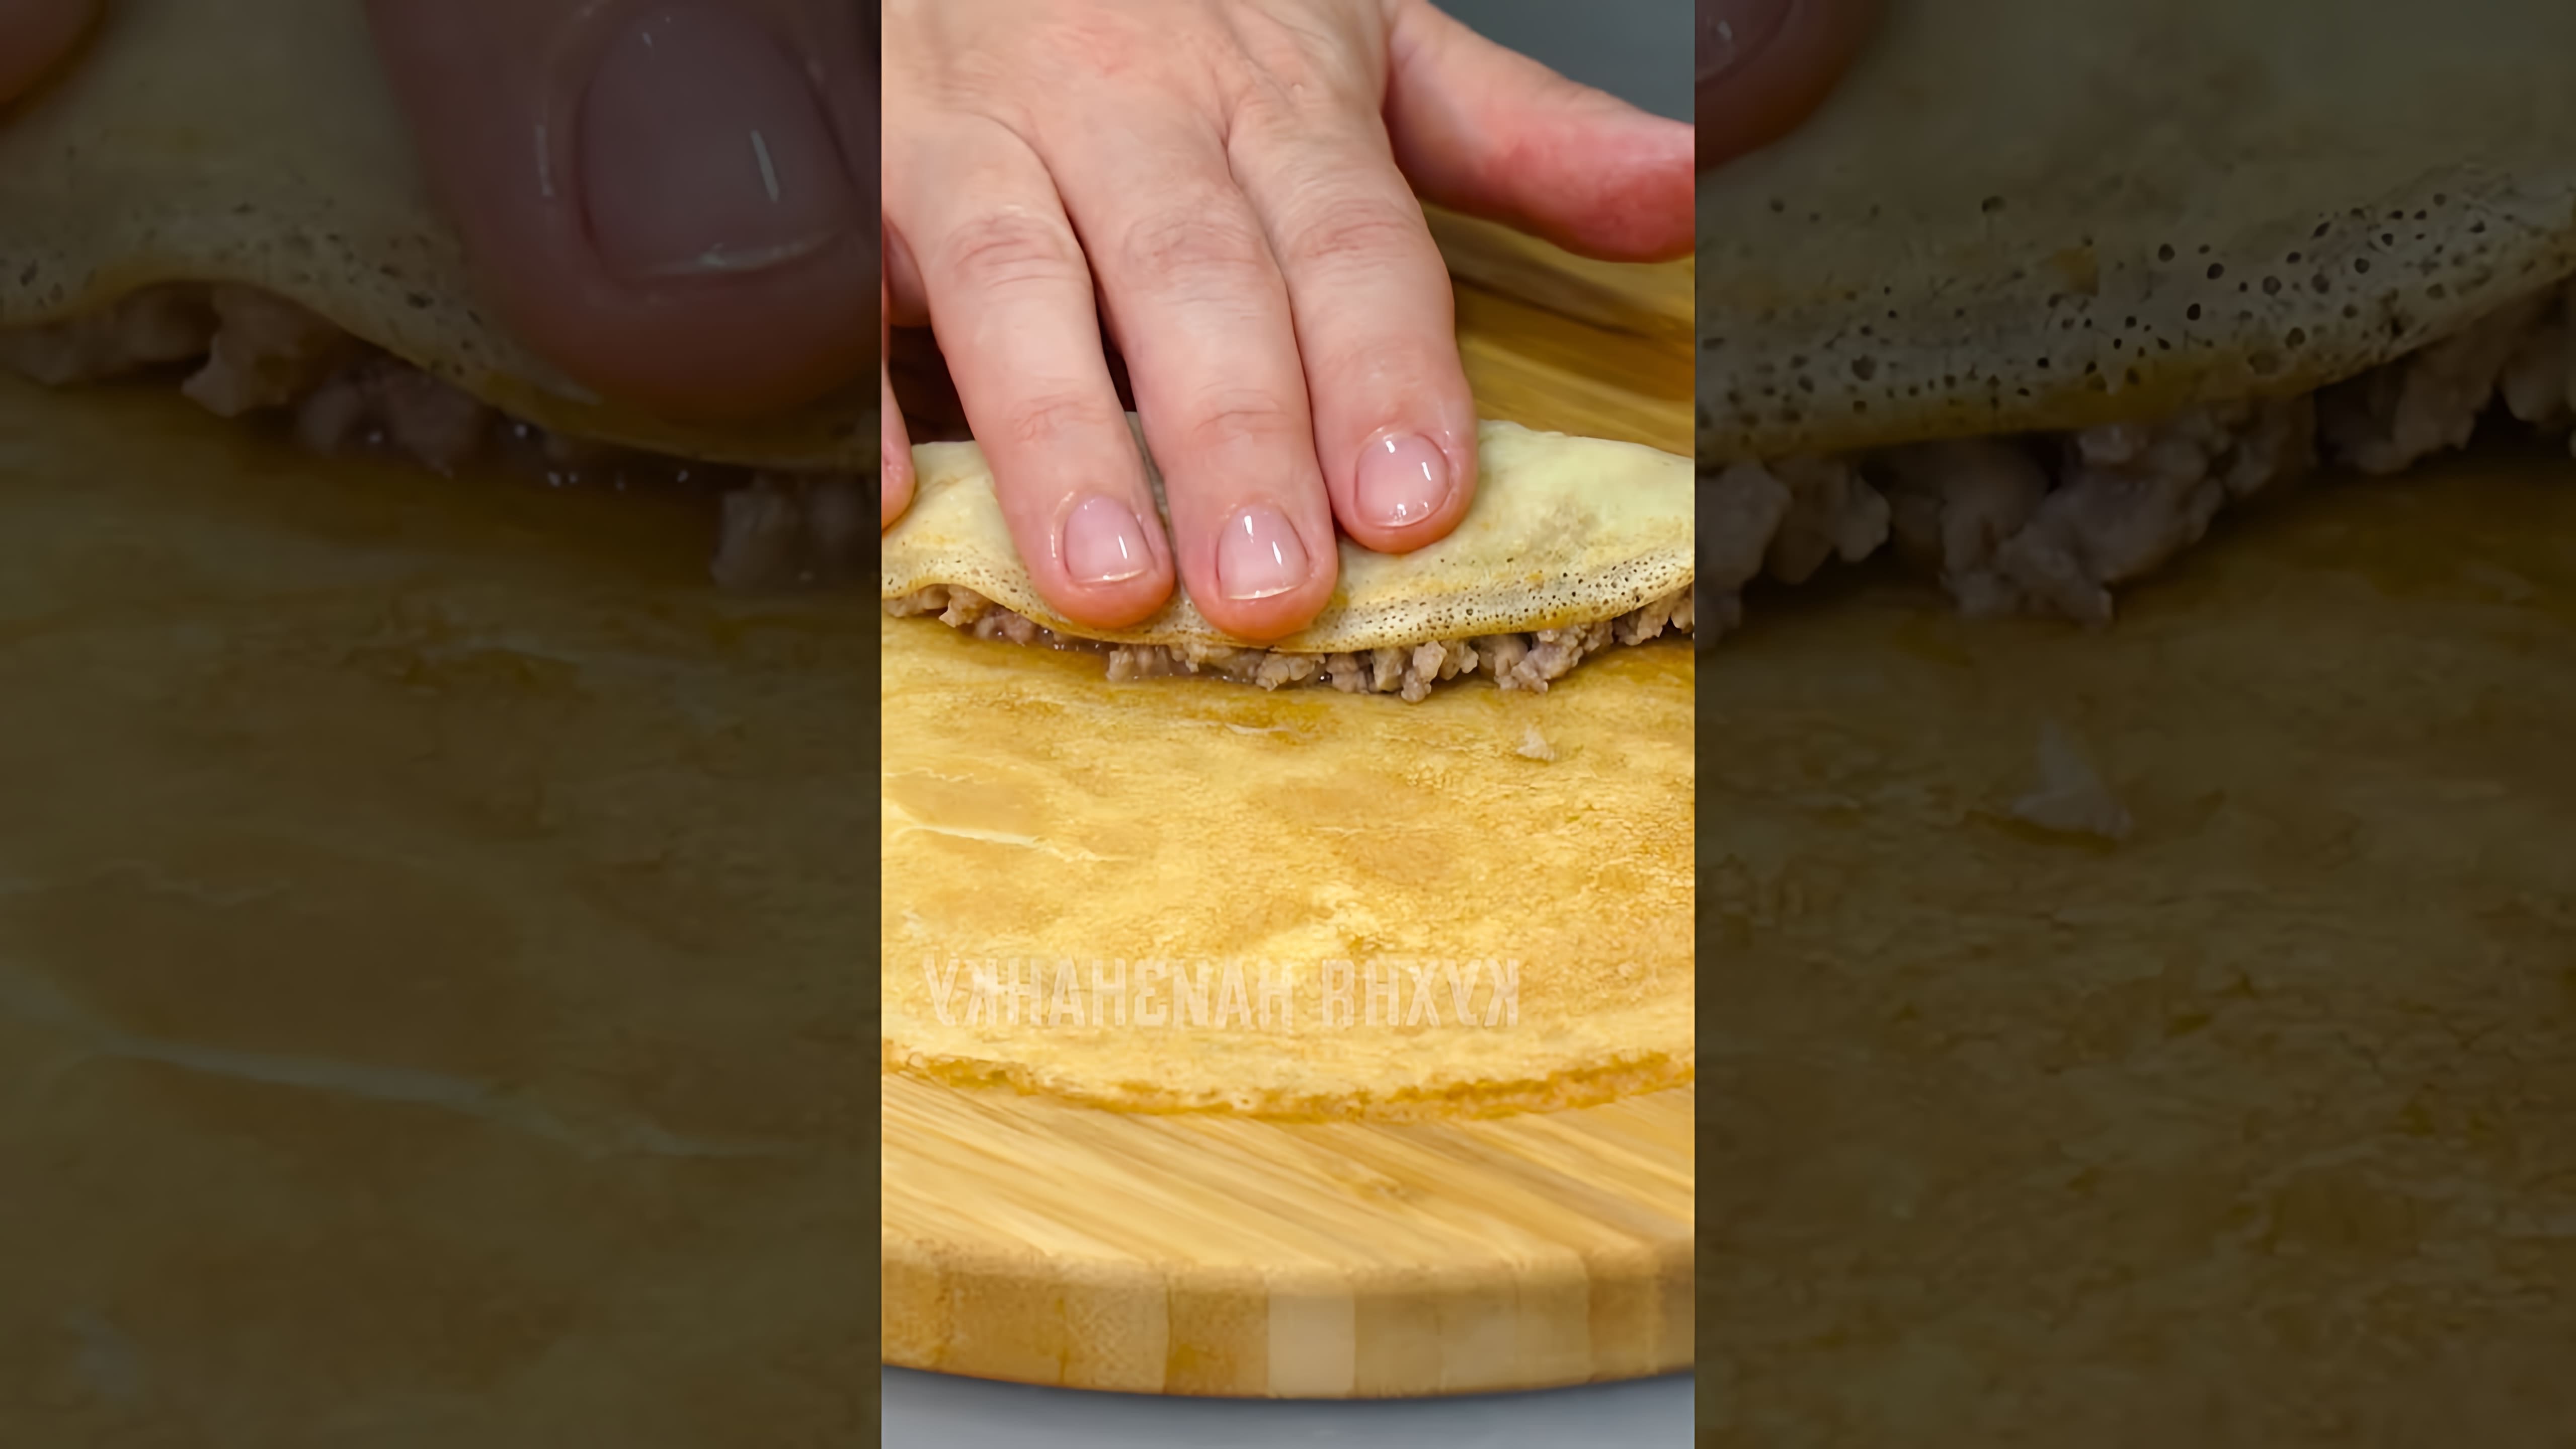 В этом видео демонстрируется процесс приготовления блинчиков с мясной начинкой